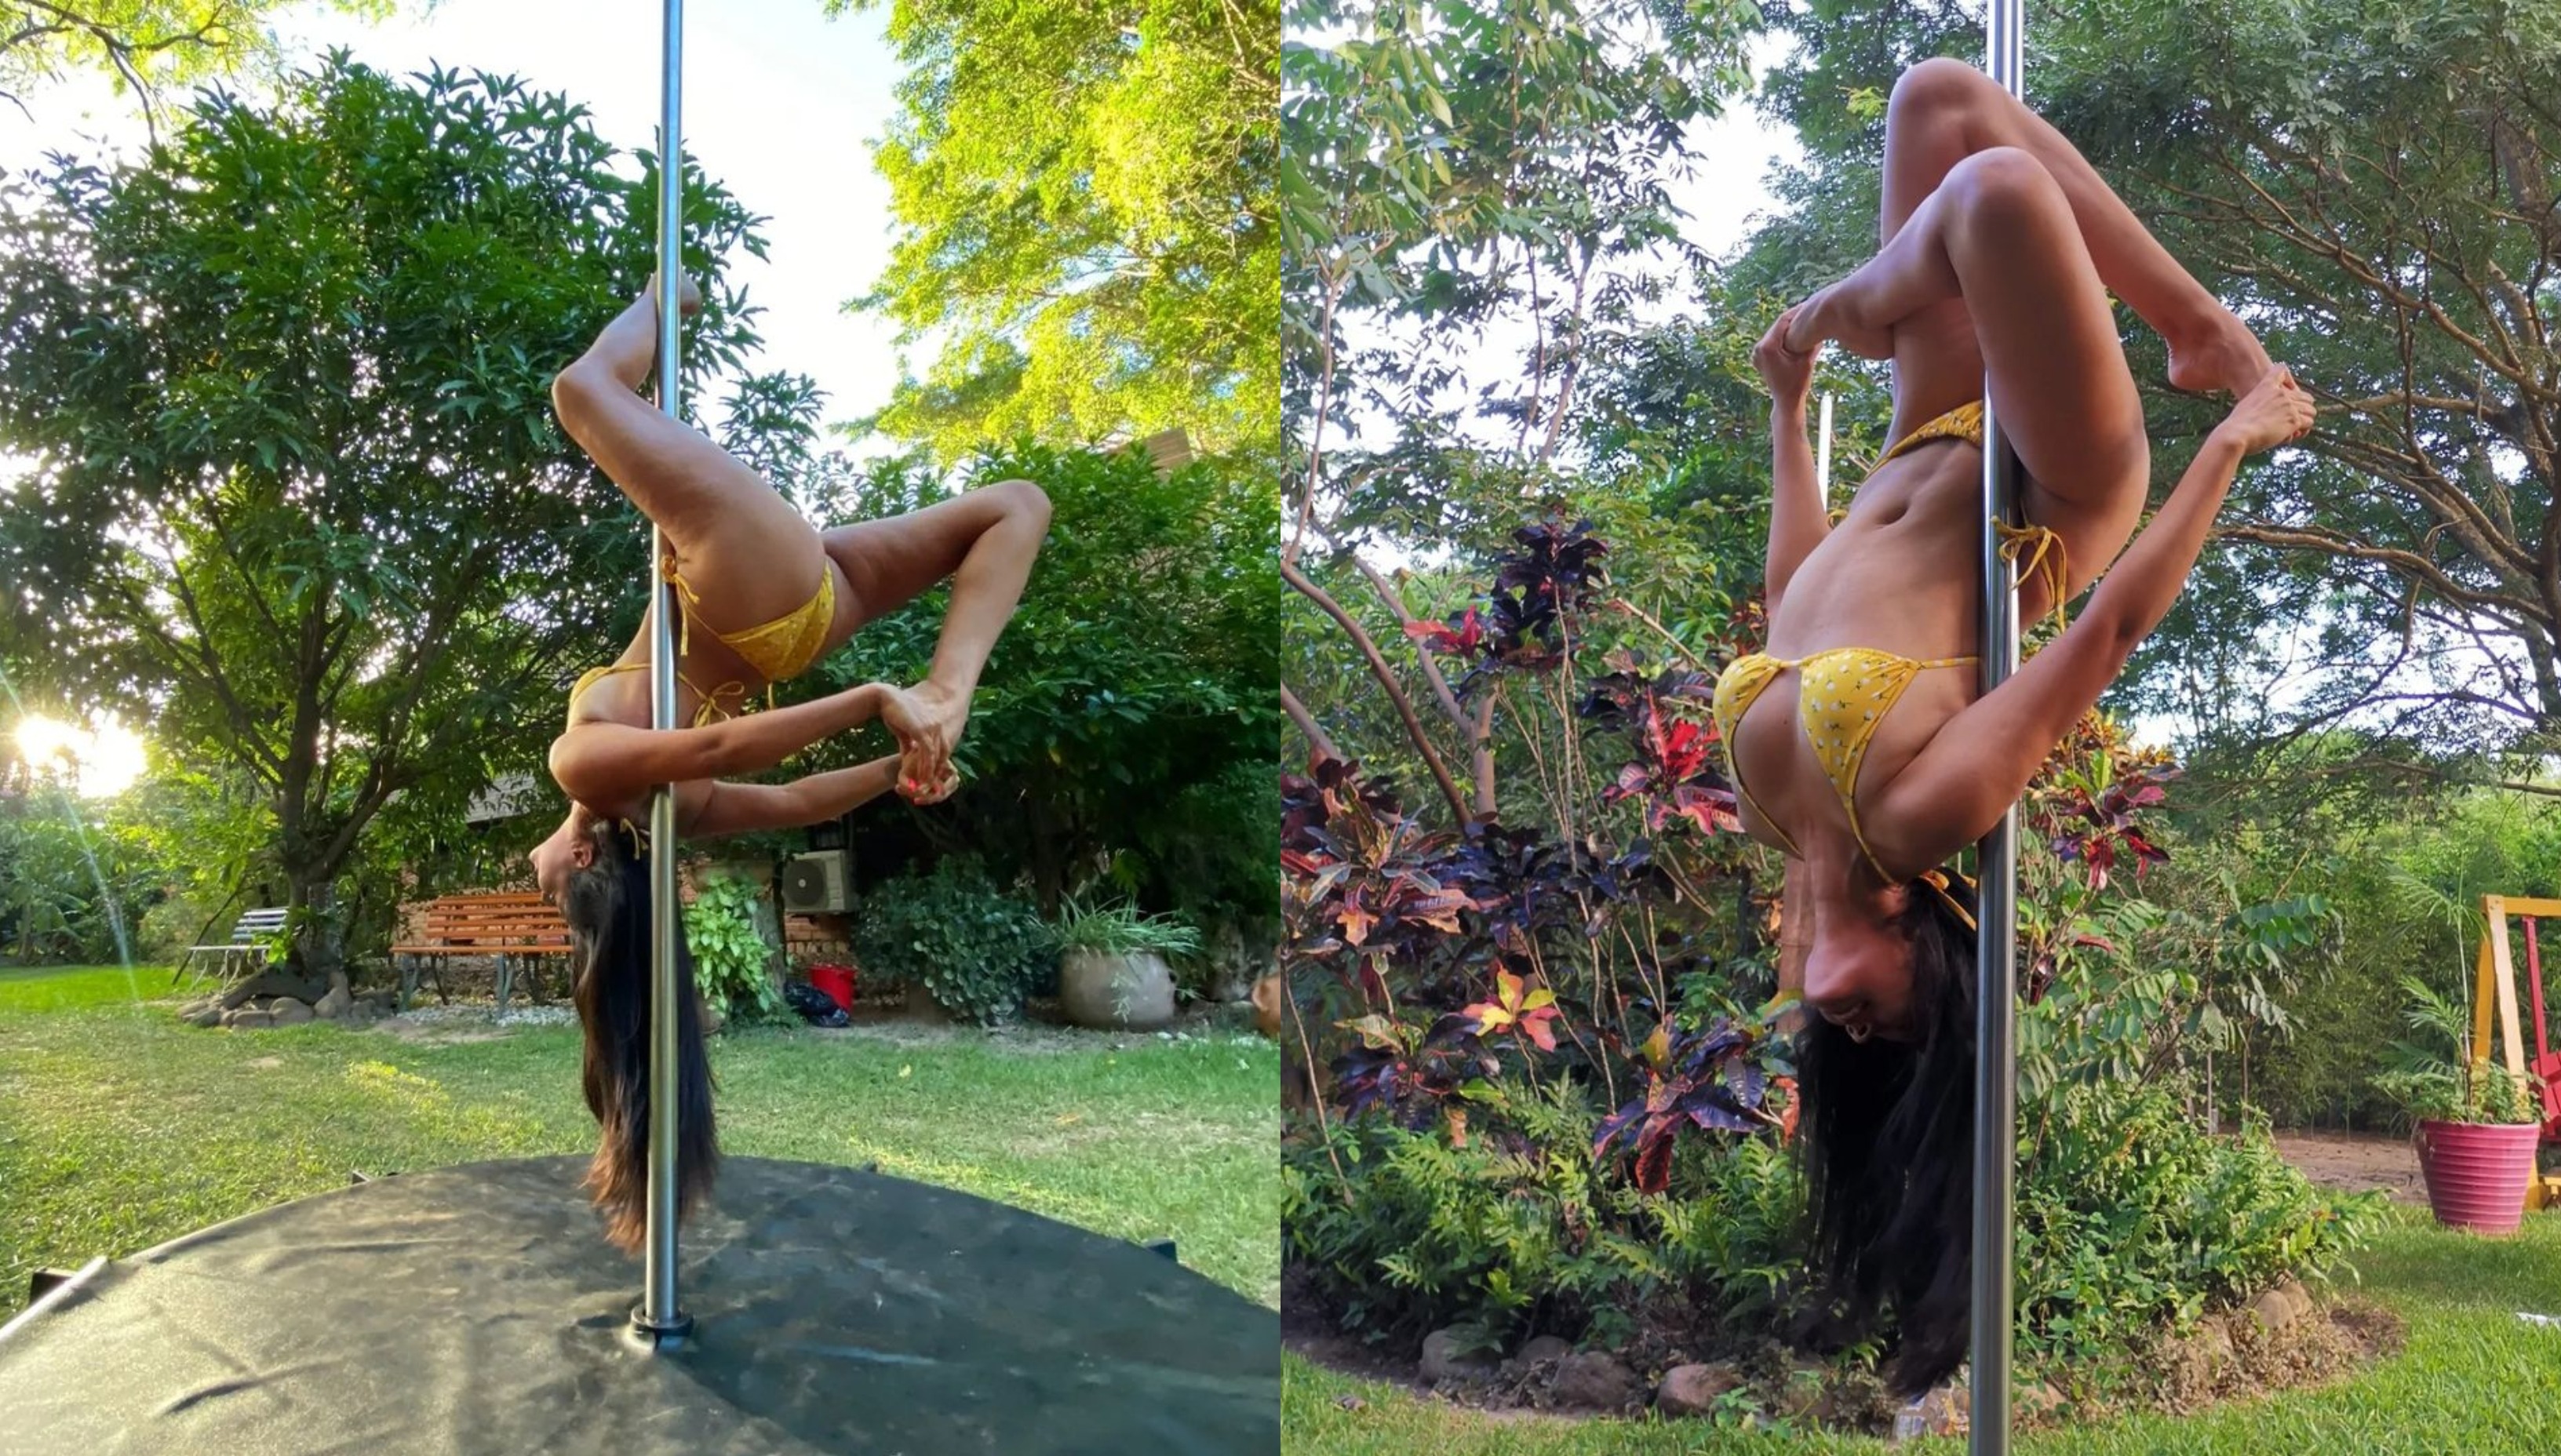 Rebeca Roca, la pareja de Giuseppe Benignini, es amante del pole dance / Instagram